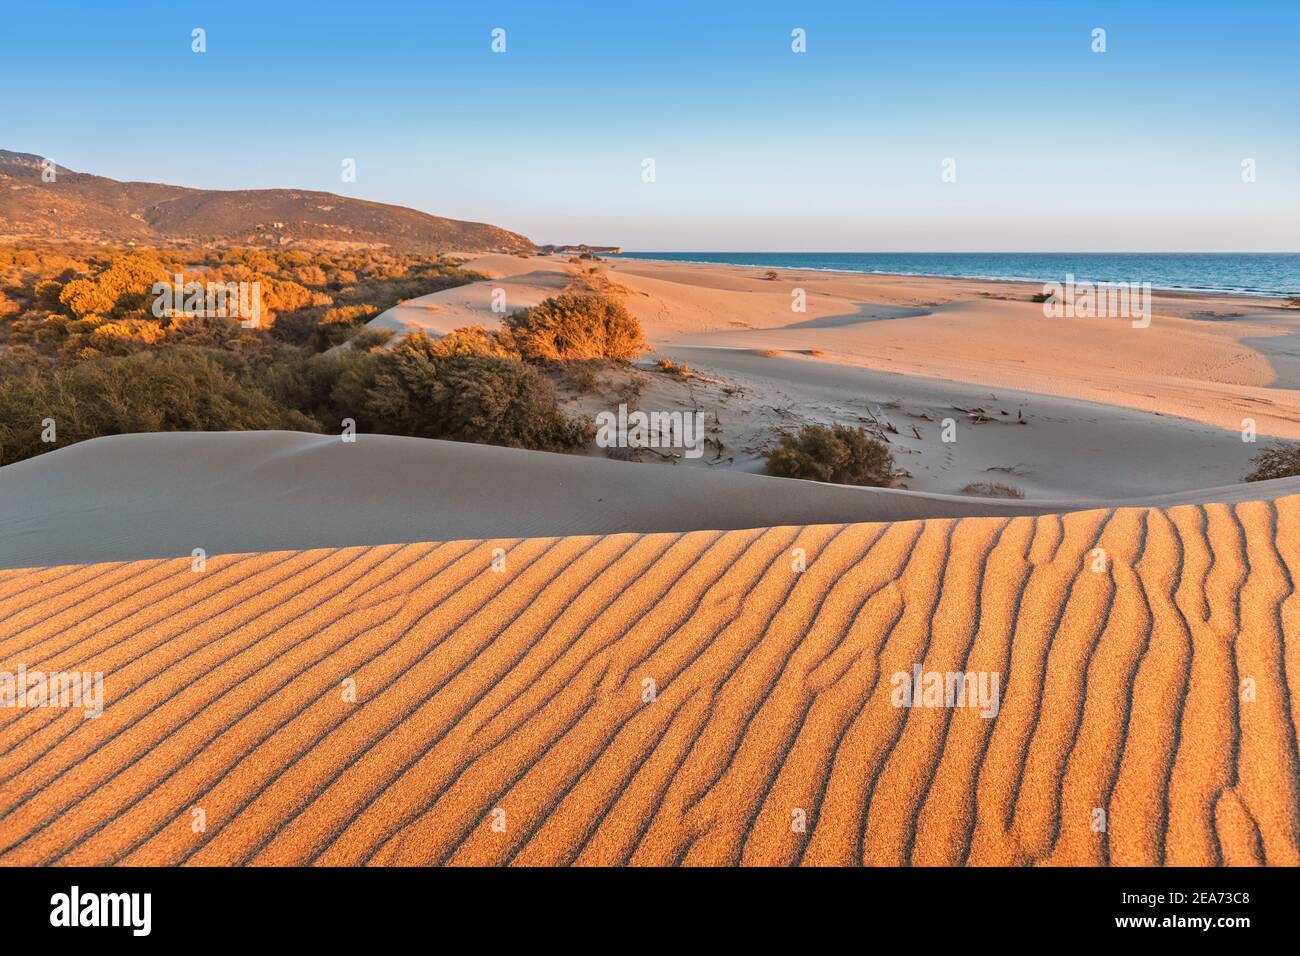 Patara Strand ist ein berühmtes touristisches Wahrzeichen und natürliches Ziel in der Türkei. Majestätischer Blick auf orangefarbene Sanddünen und Hügel leuchtet in den Strahlen des Krieges Stockfoto